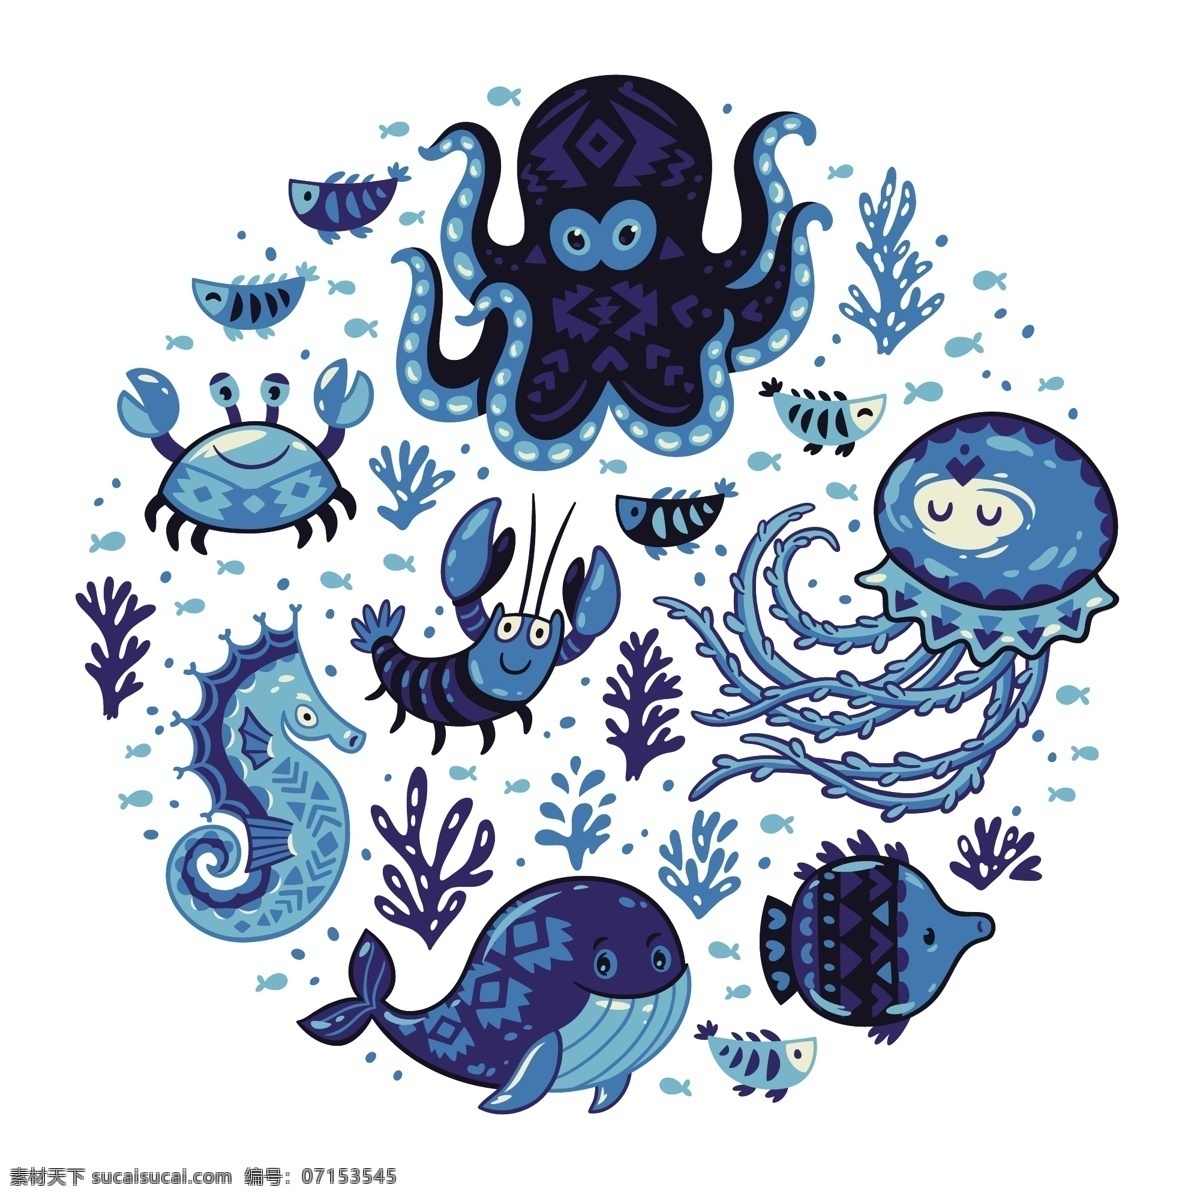 蓝色 卡通 海洋 动物 插画 可爱 章鱼 水母 螃蟹 龙虾 海马 鲸鱼